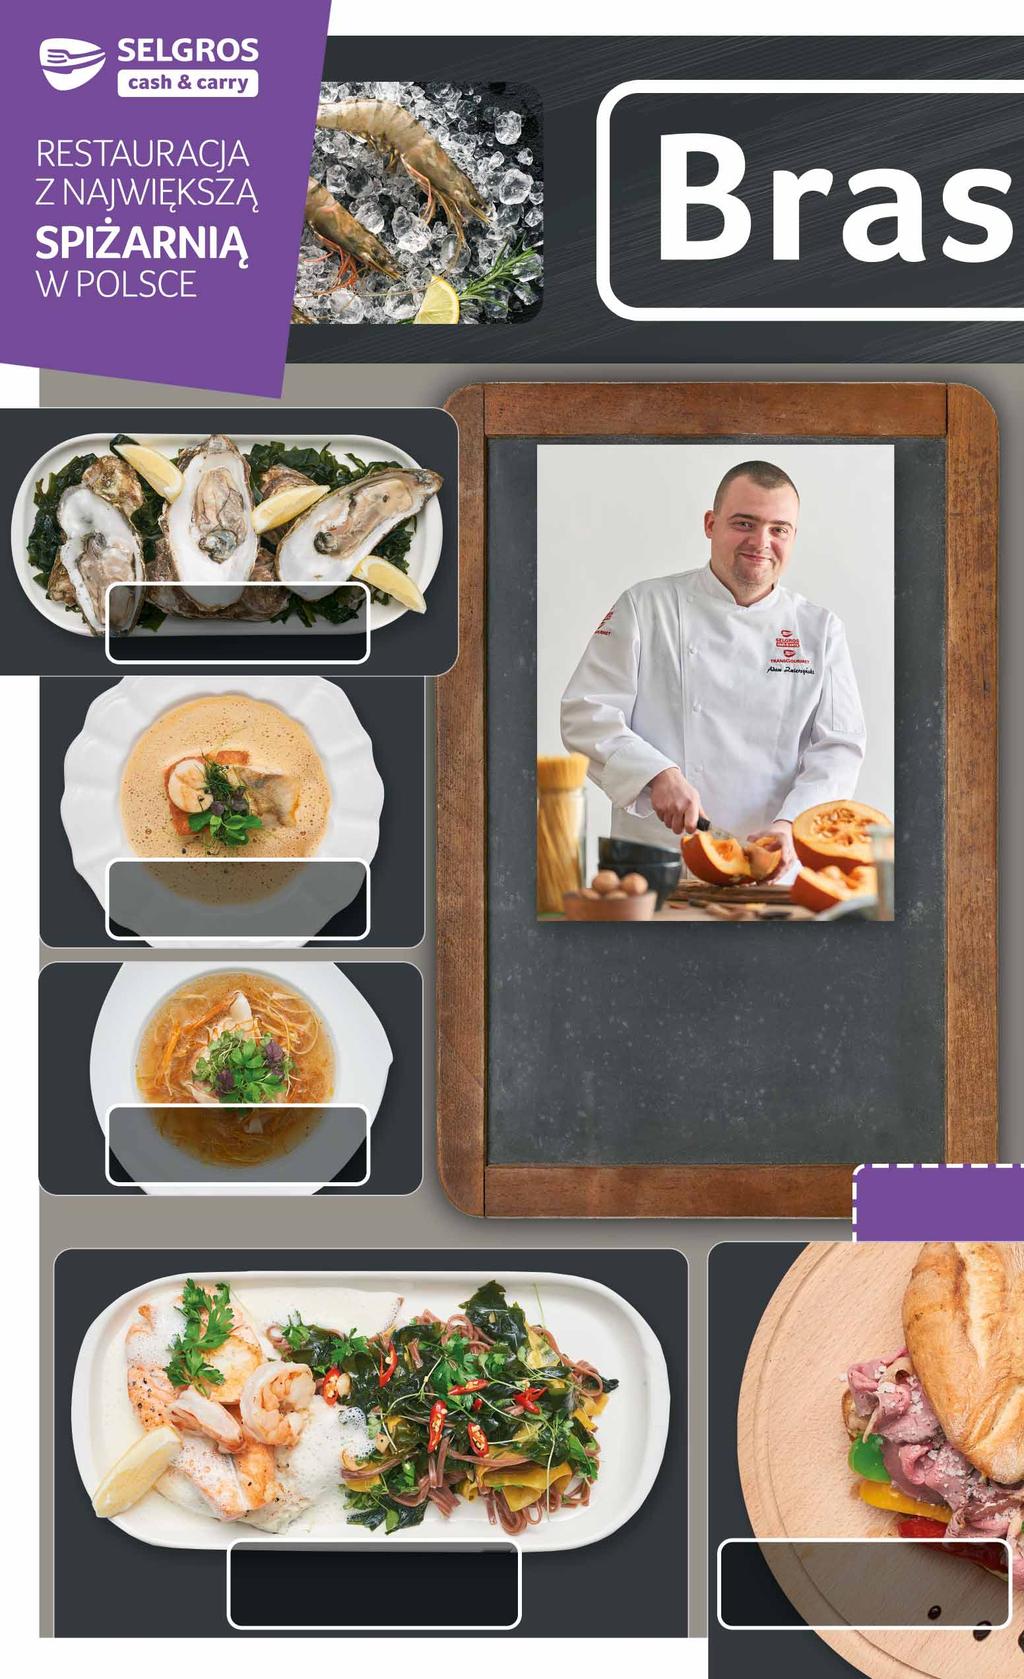 Świeże ostrygi Zupa rybna Bouillabaisse ADAM ZWIERZYŃSKI Szef kuchni Brasserie Całą swoją wiedzę kulinarną wyniósł ze Skandynawii.